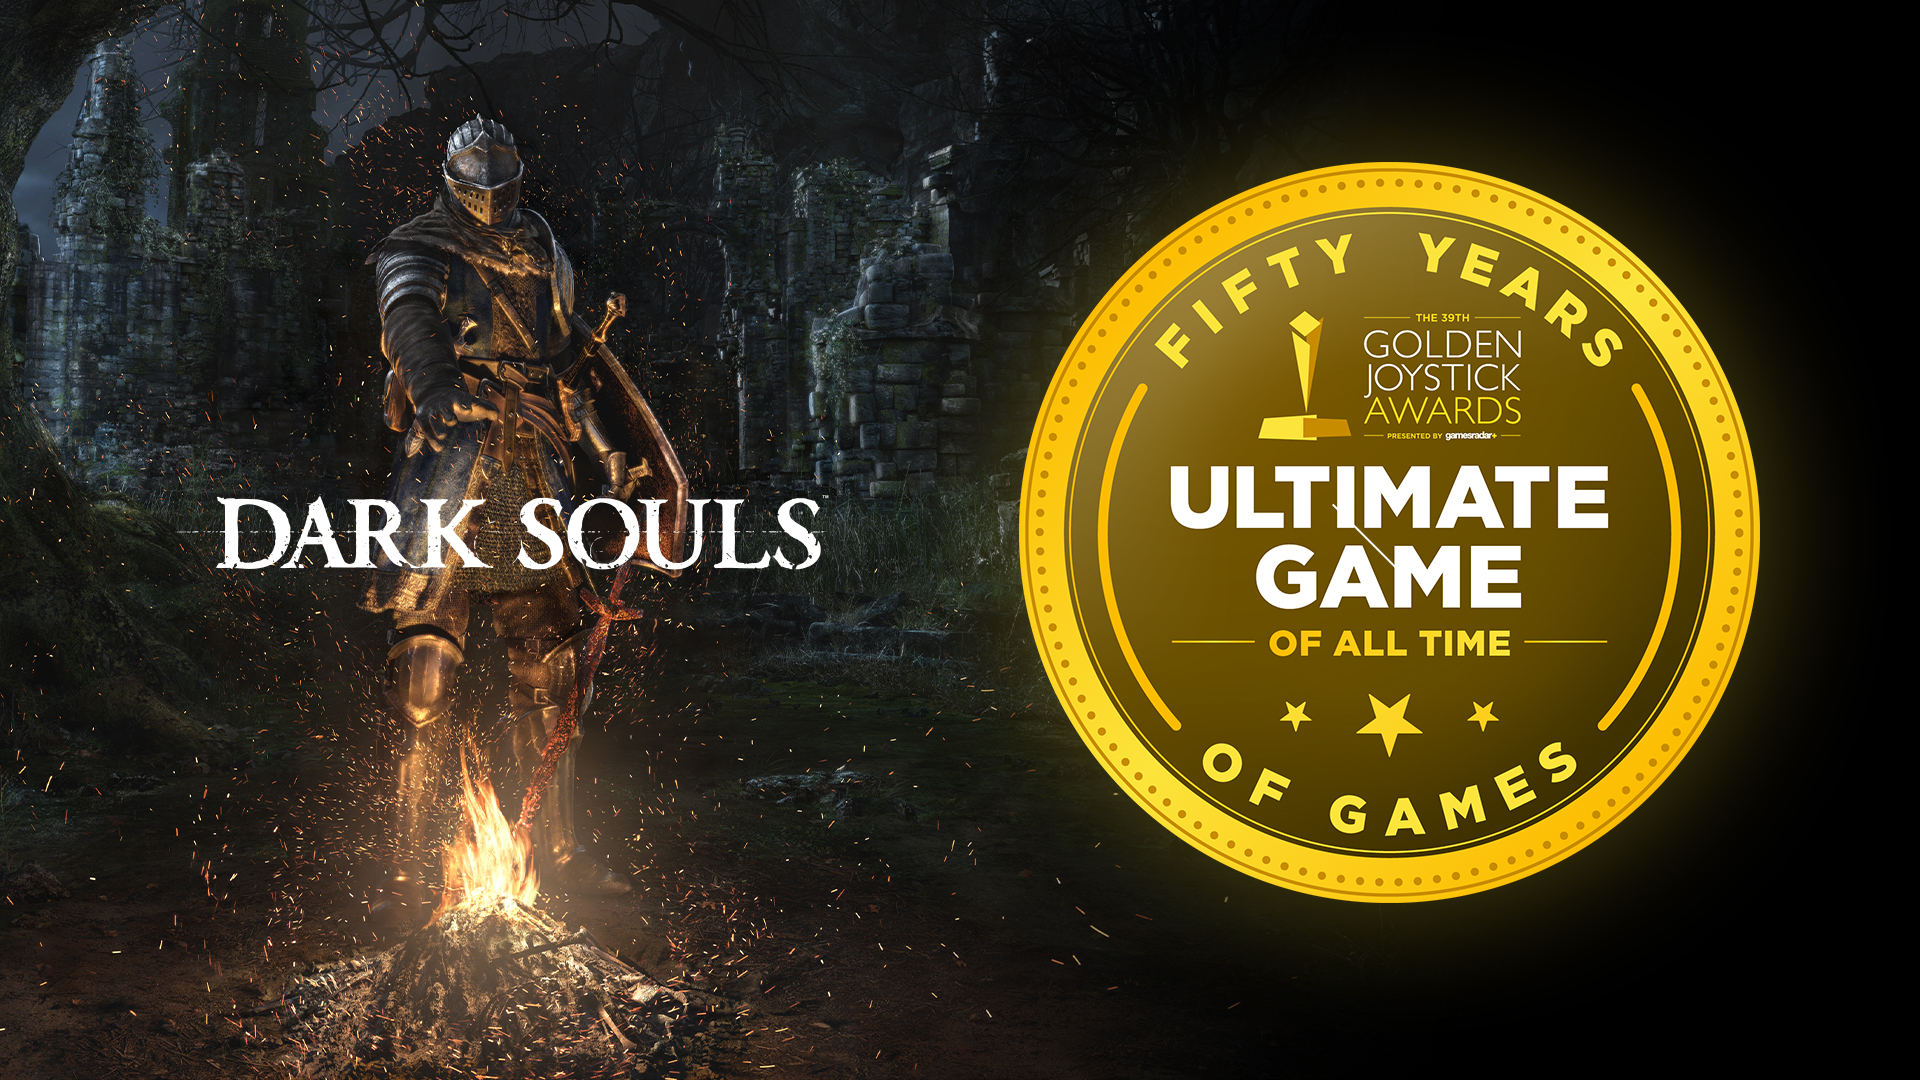 Dark Souls Named Ultimate Game of All Time - Golden Joystick Awards 